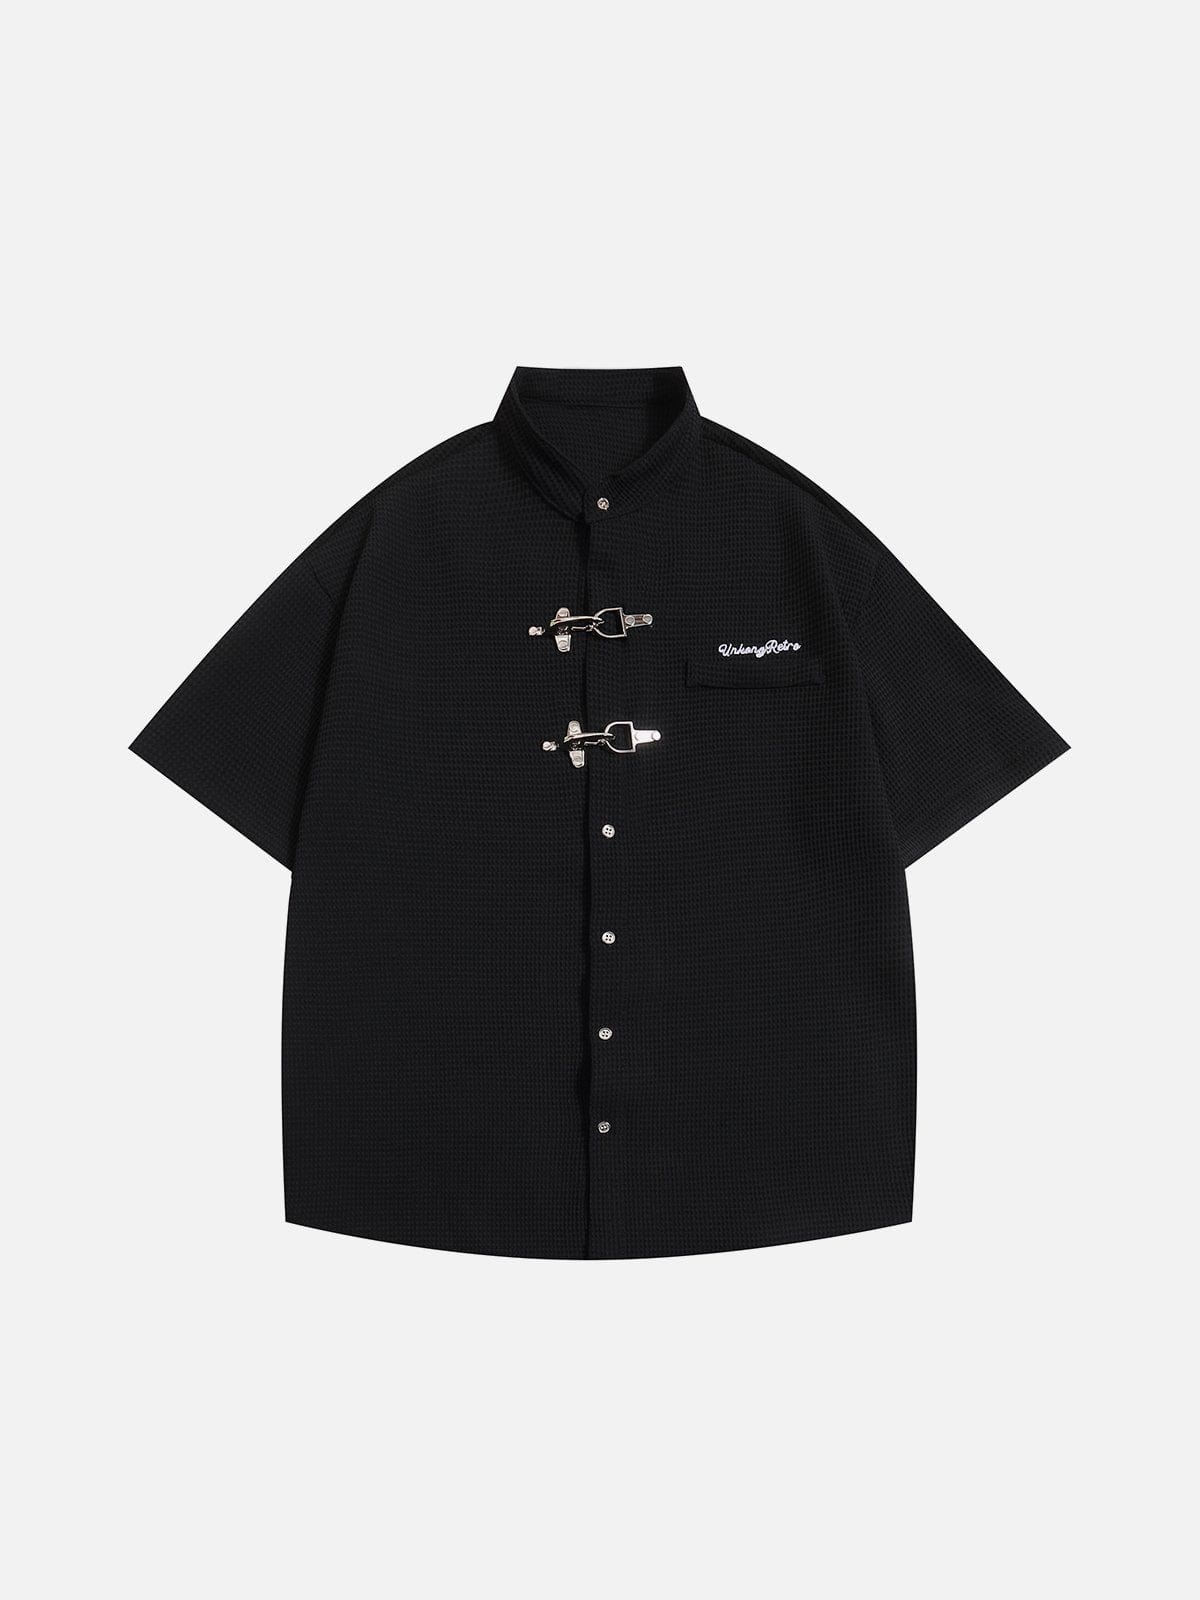 NEV Textured Metal Button Short Sleeve Shirt